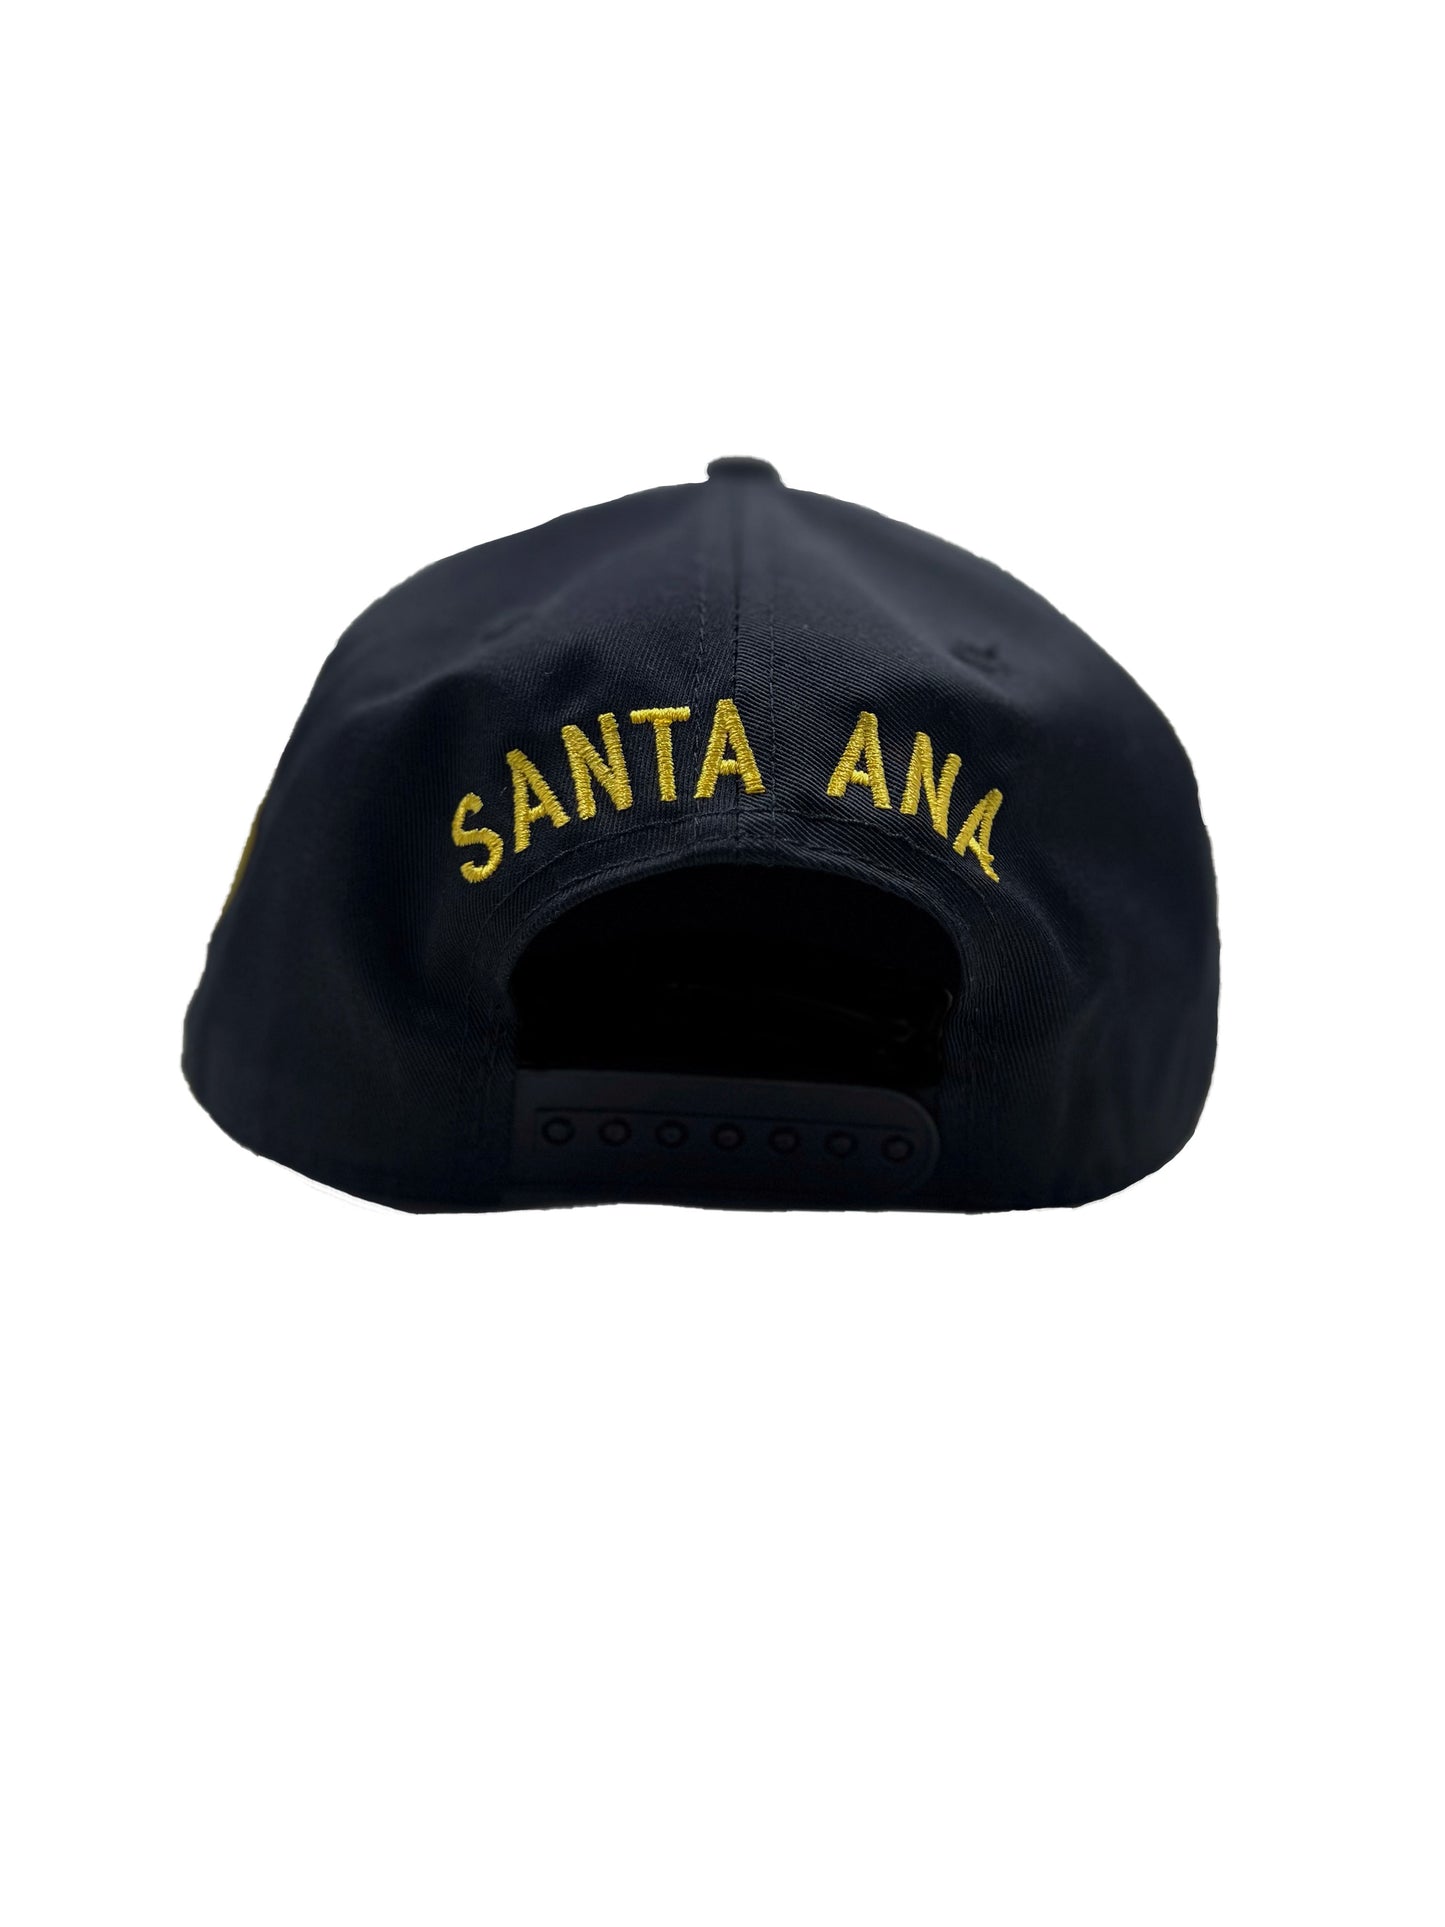 Santa Ana Athletics [ Snapback ]